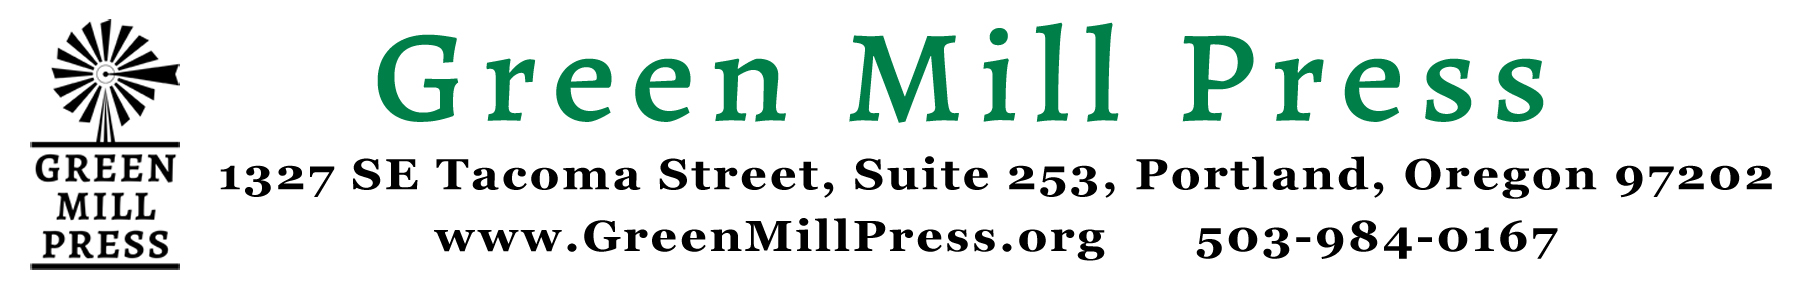 Green Mill Press